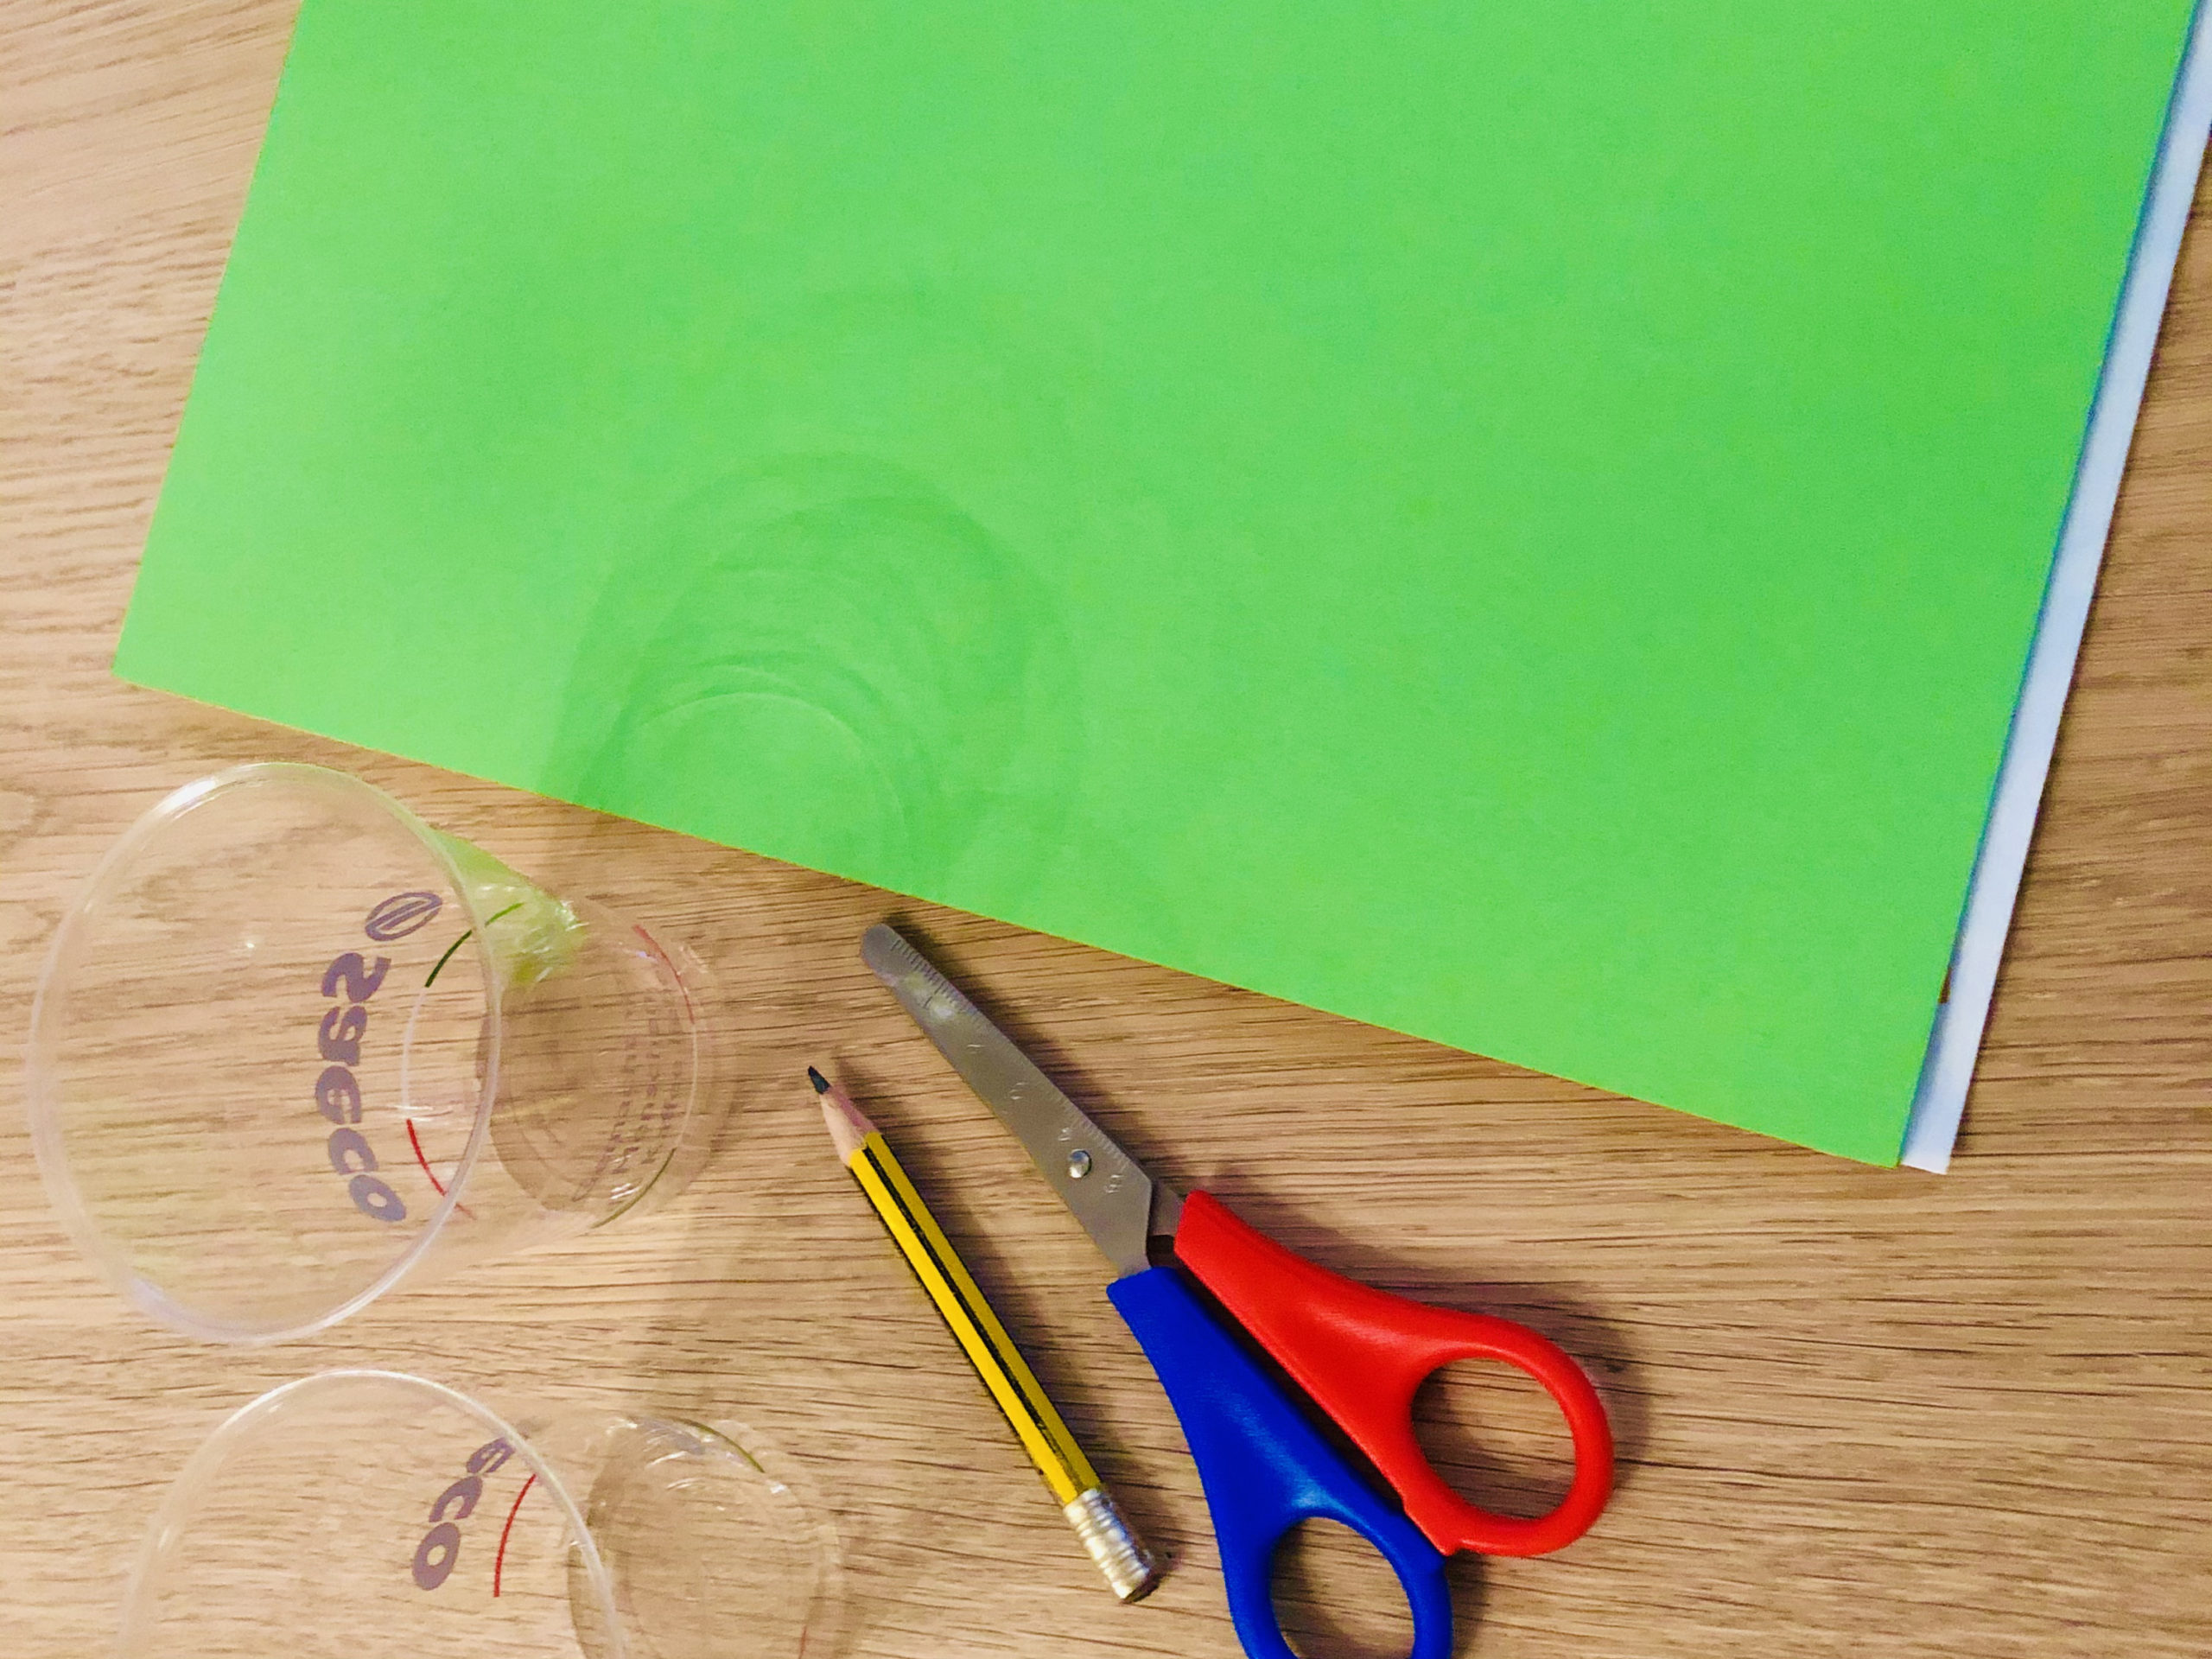 Bild zum Schritt 1 für das Bastel- und DIY-Abenteuer für Kinder: 'Legt euch die Bastelunterlage aus und sucht alle Materialien zusammen.'